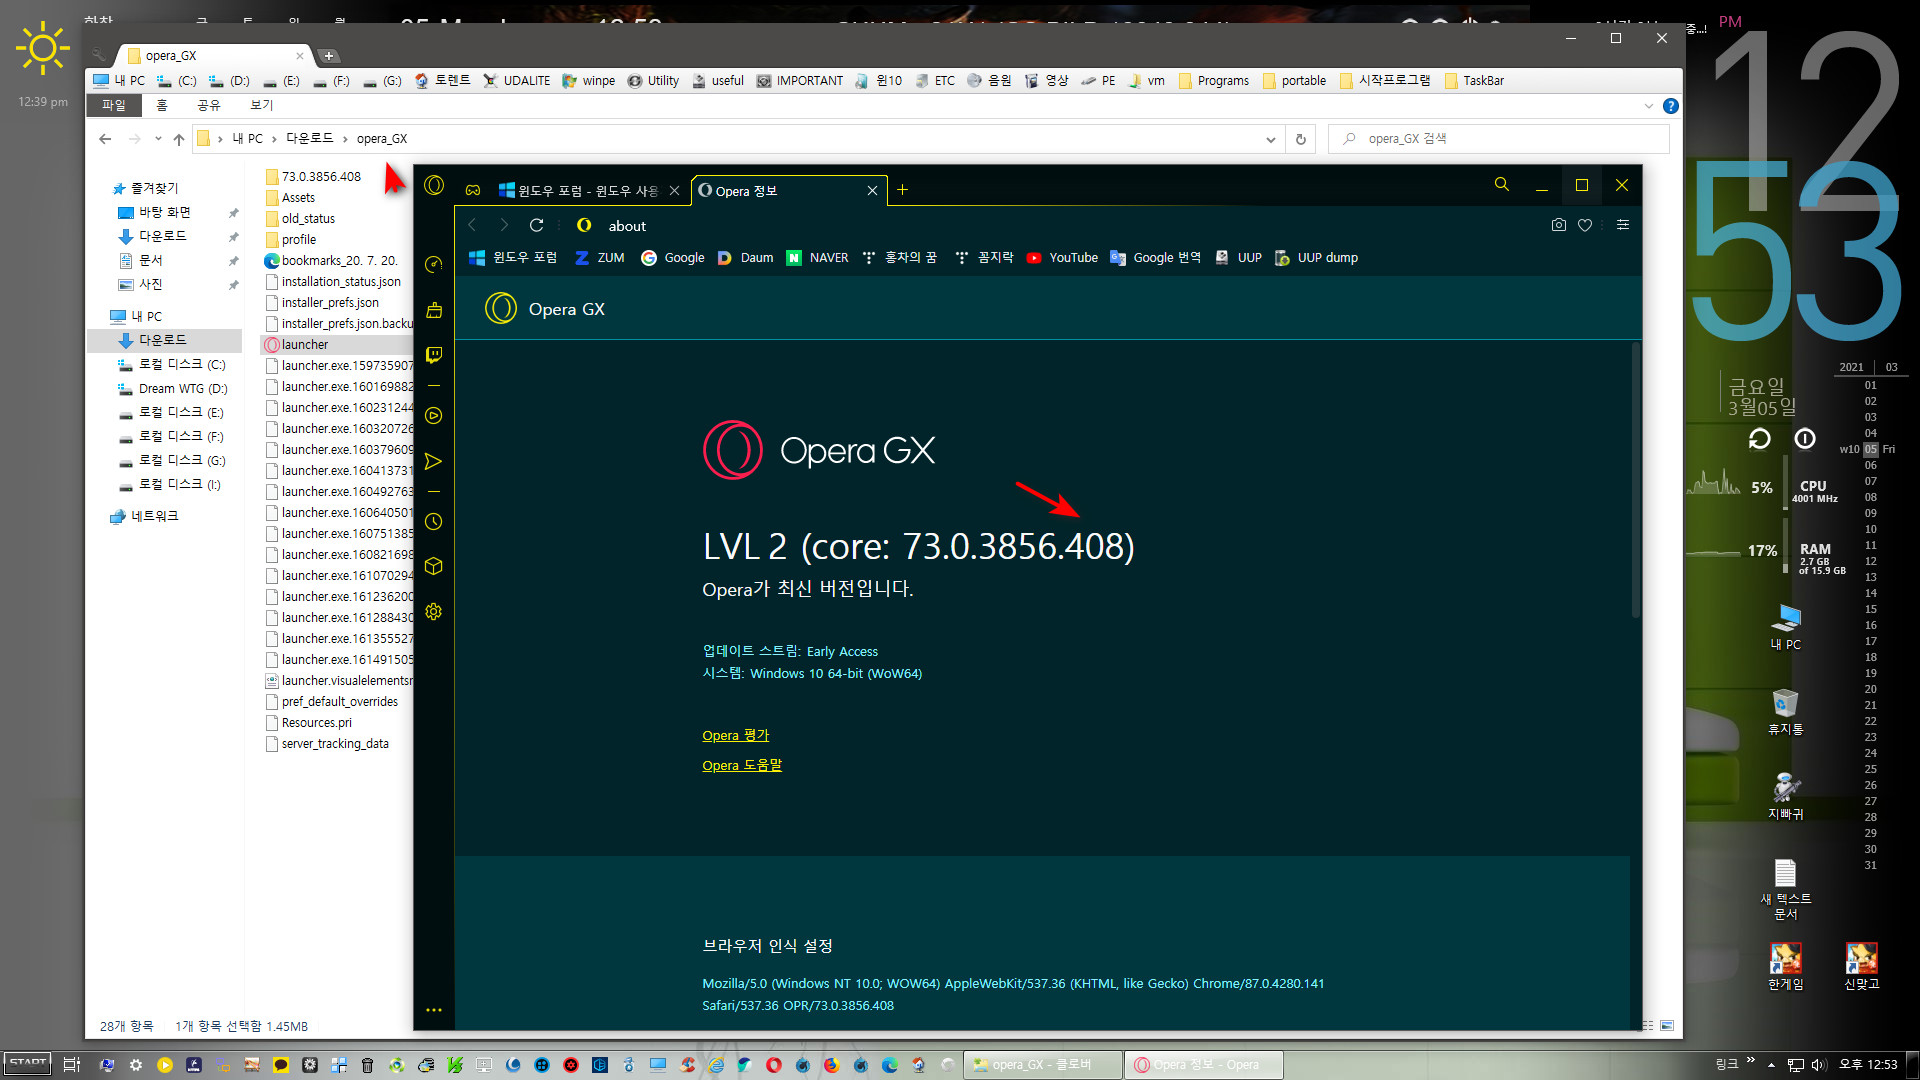 Opera GX 102.0.4880.82 instal the new